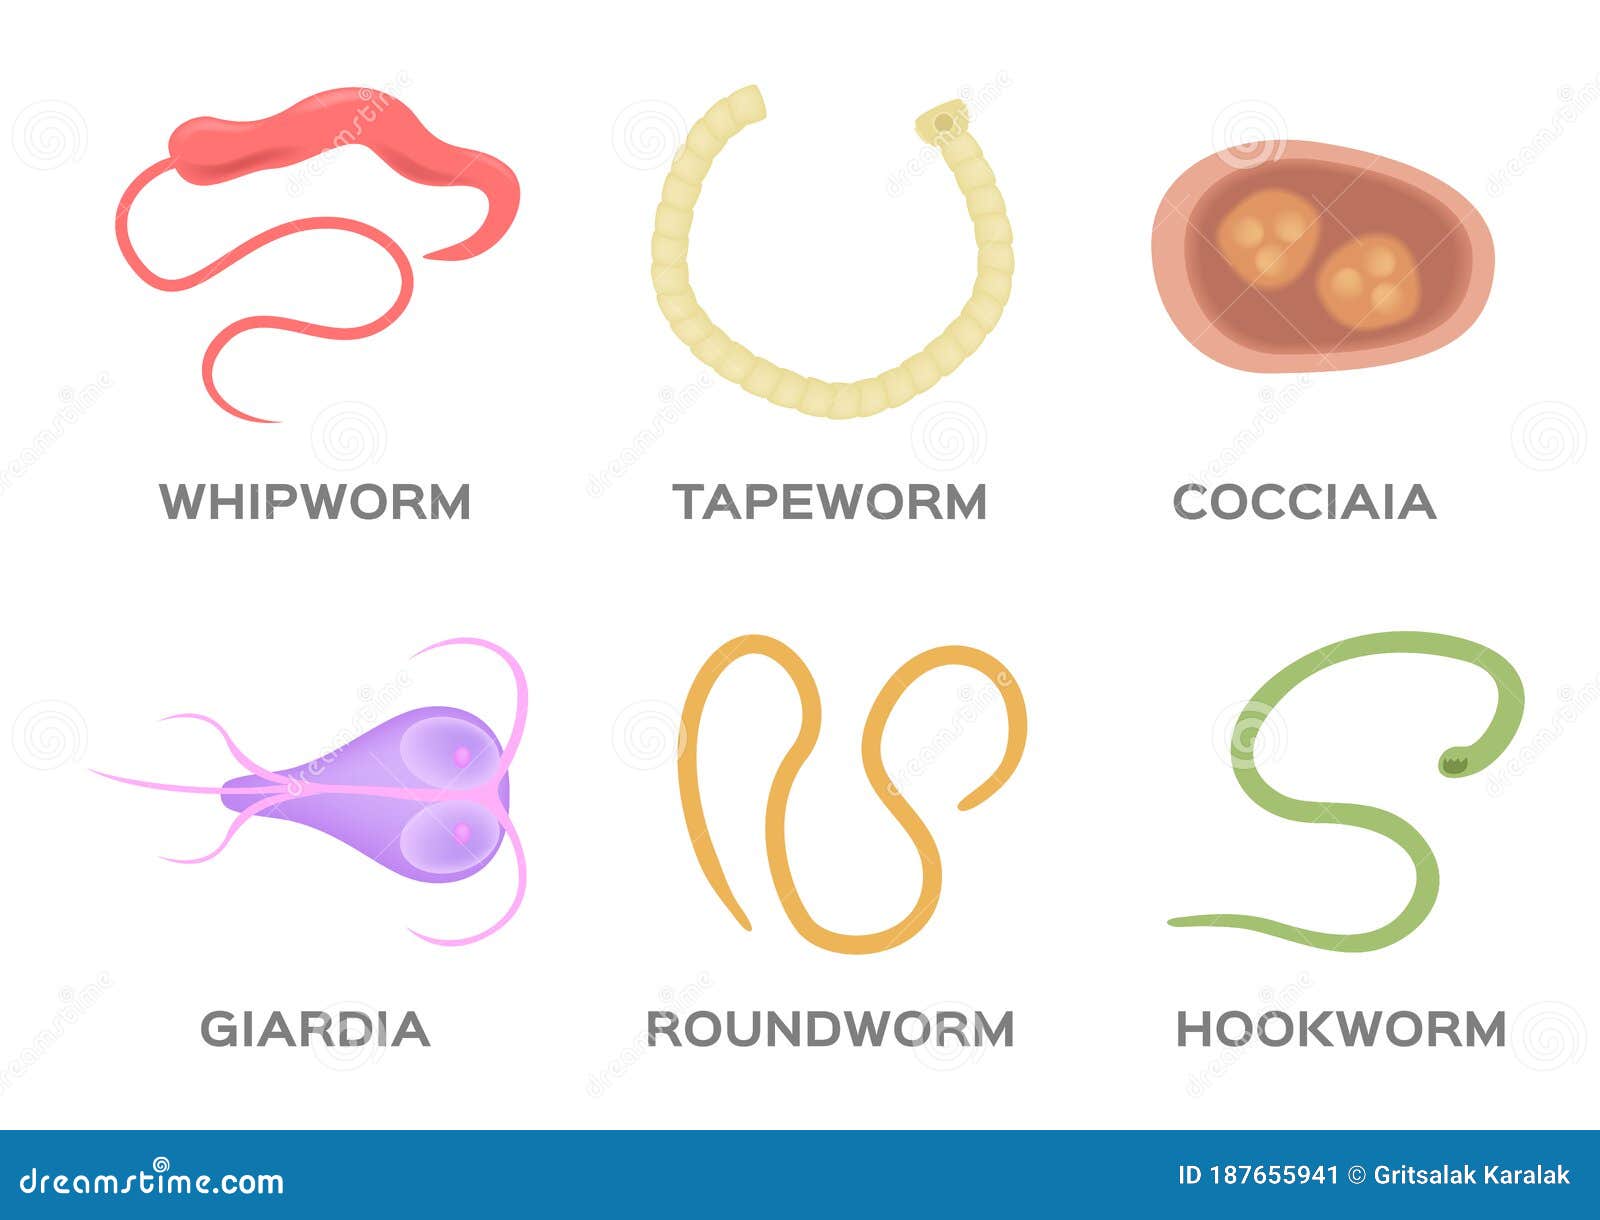 pinworm giardiasis)